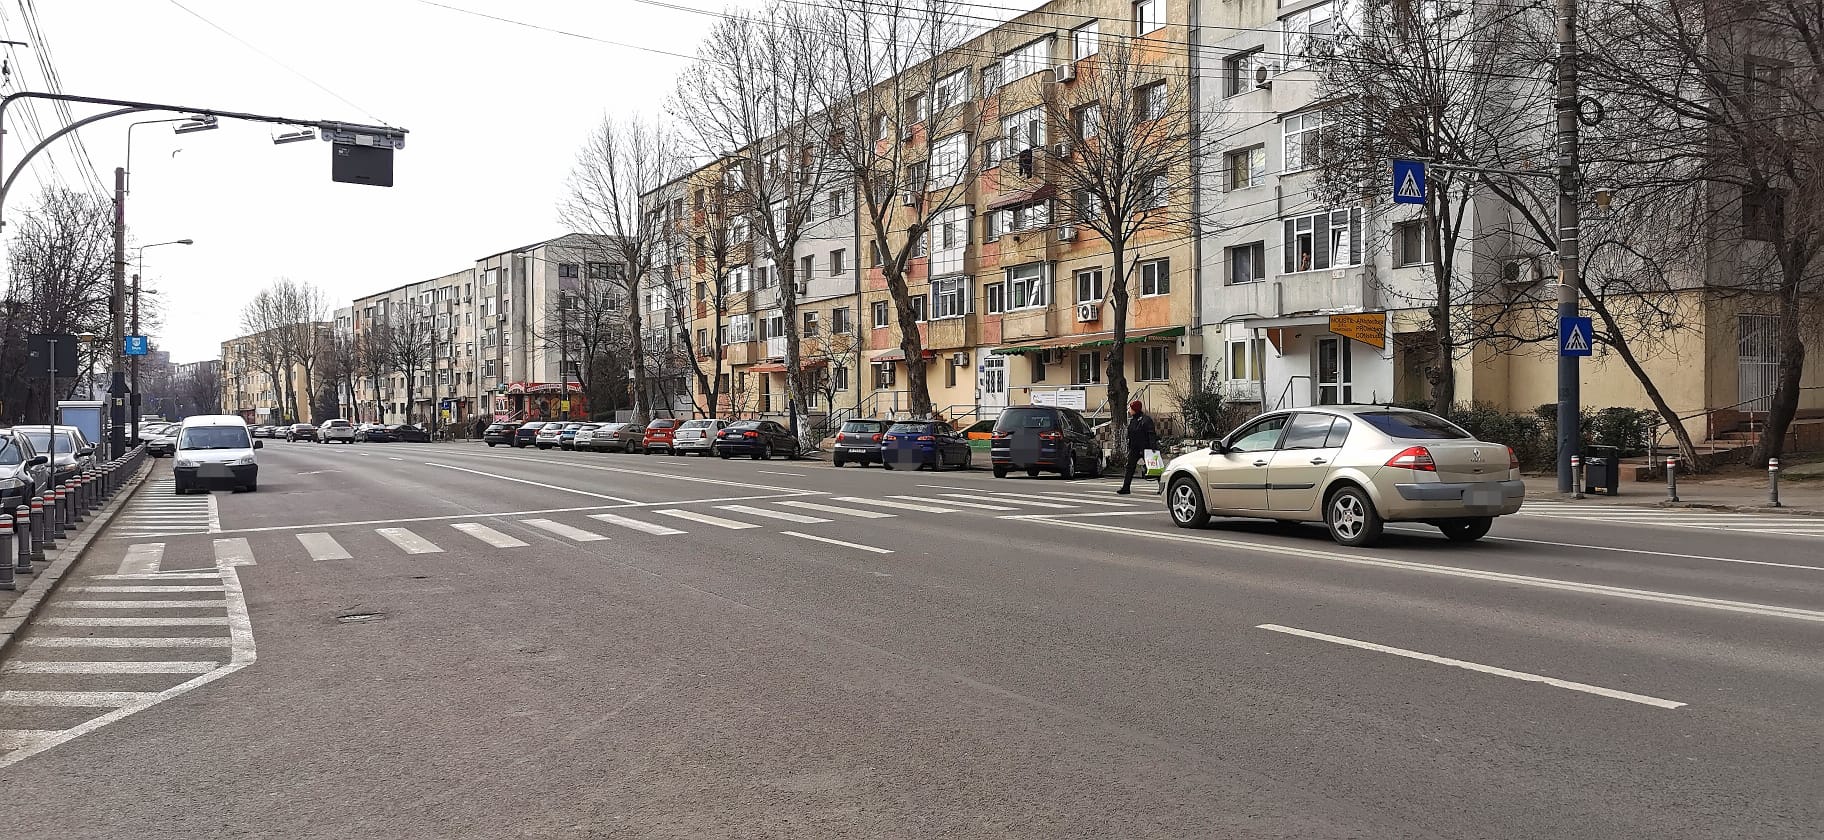 Noi reguli de circulație între bulevardul Tomis, strada Soveja, bulevardul Alexandru Lăpușneanu și strada Suceava - x-reguli-1708946466.jpeg